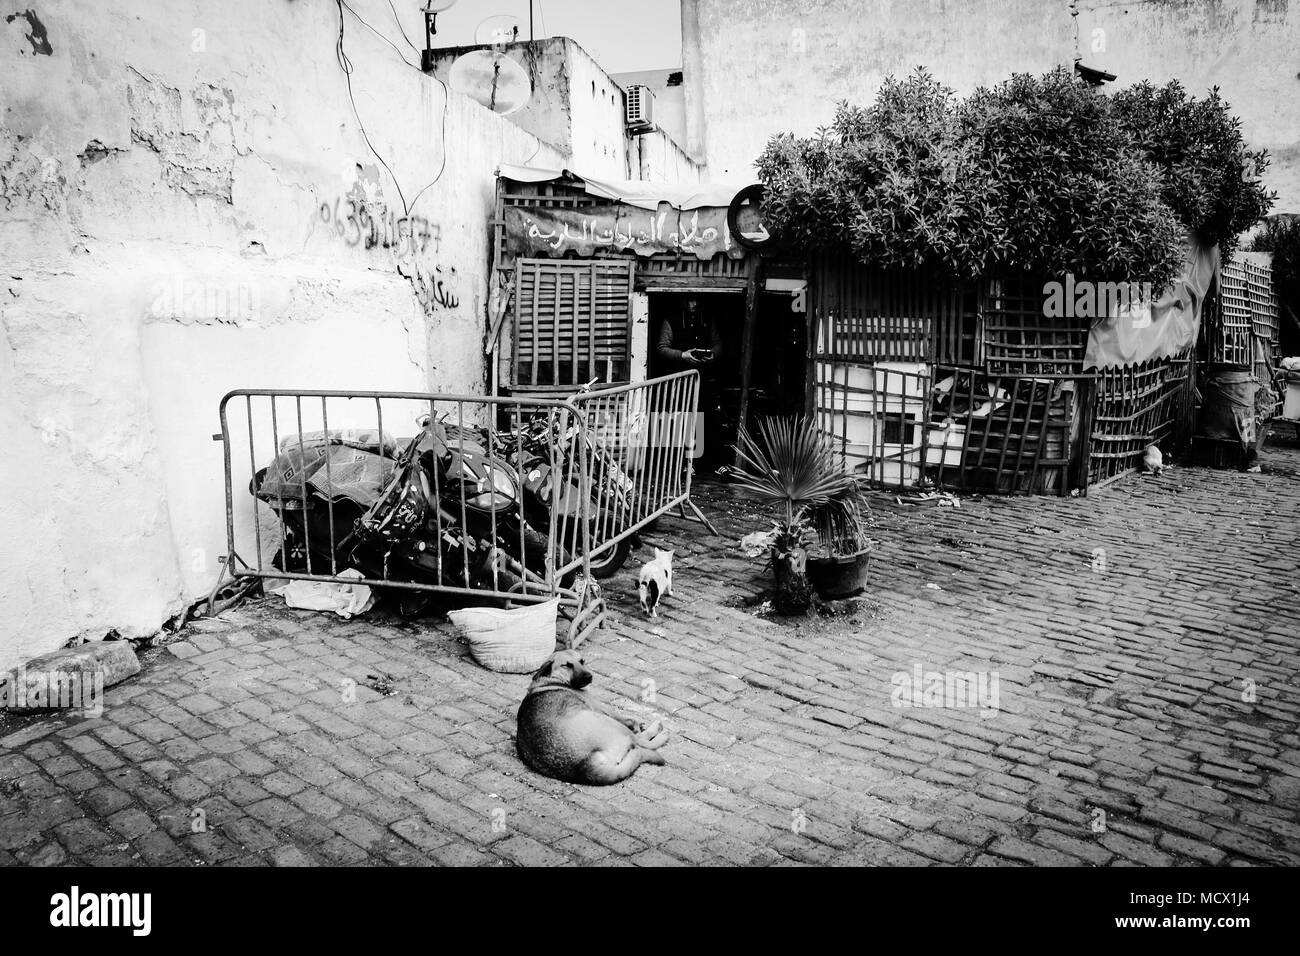 Vecchia immagine in bianco e nero di un ciclomotore semplice officina di riparazione accanto al vecchio souk di Casablanca, Marocco Foto Stock